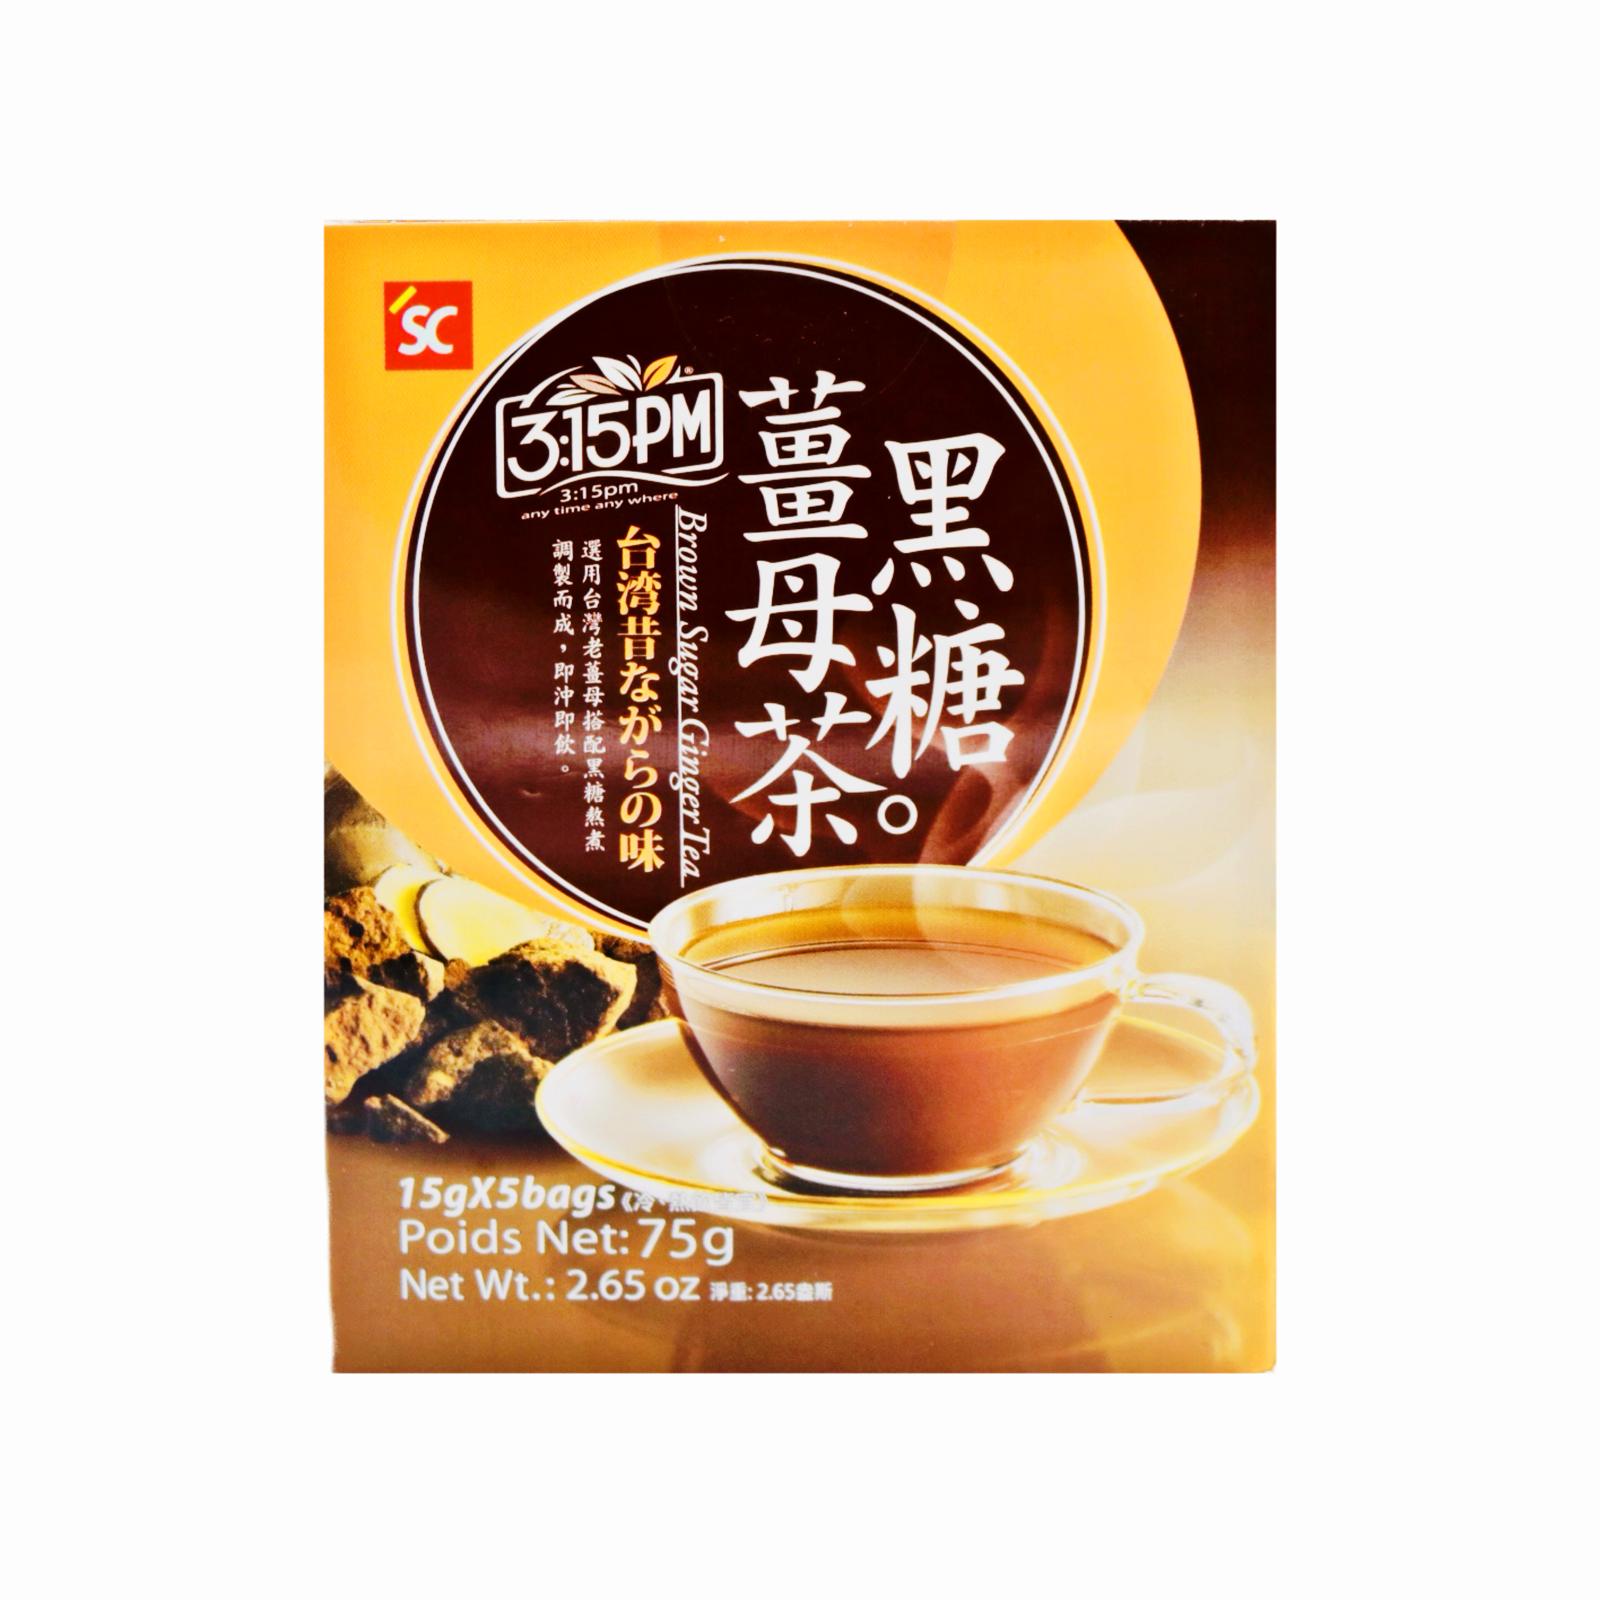 SC 3:15PM Brown Sugar Ginger Tea (15g*5bags) 75g - Tuk Tuk Mart